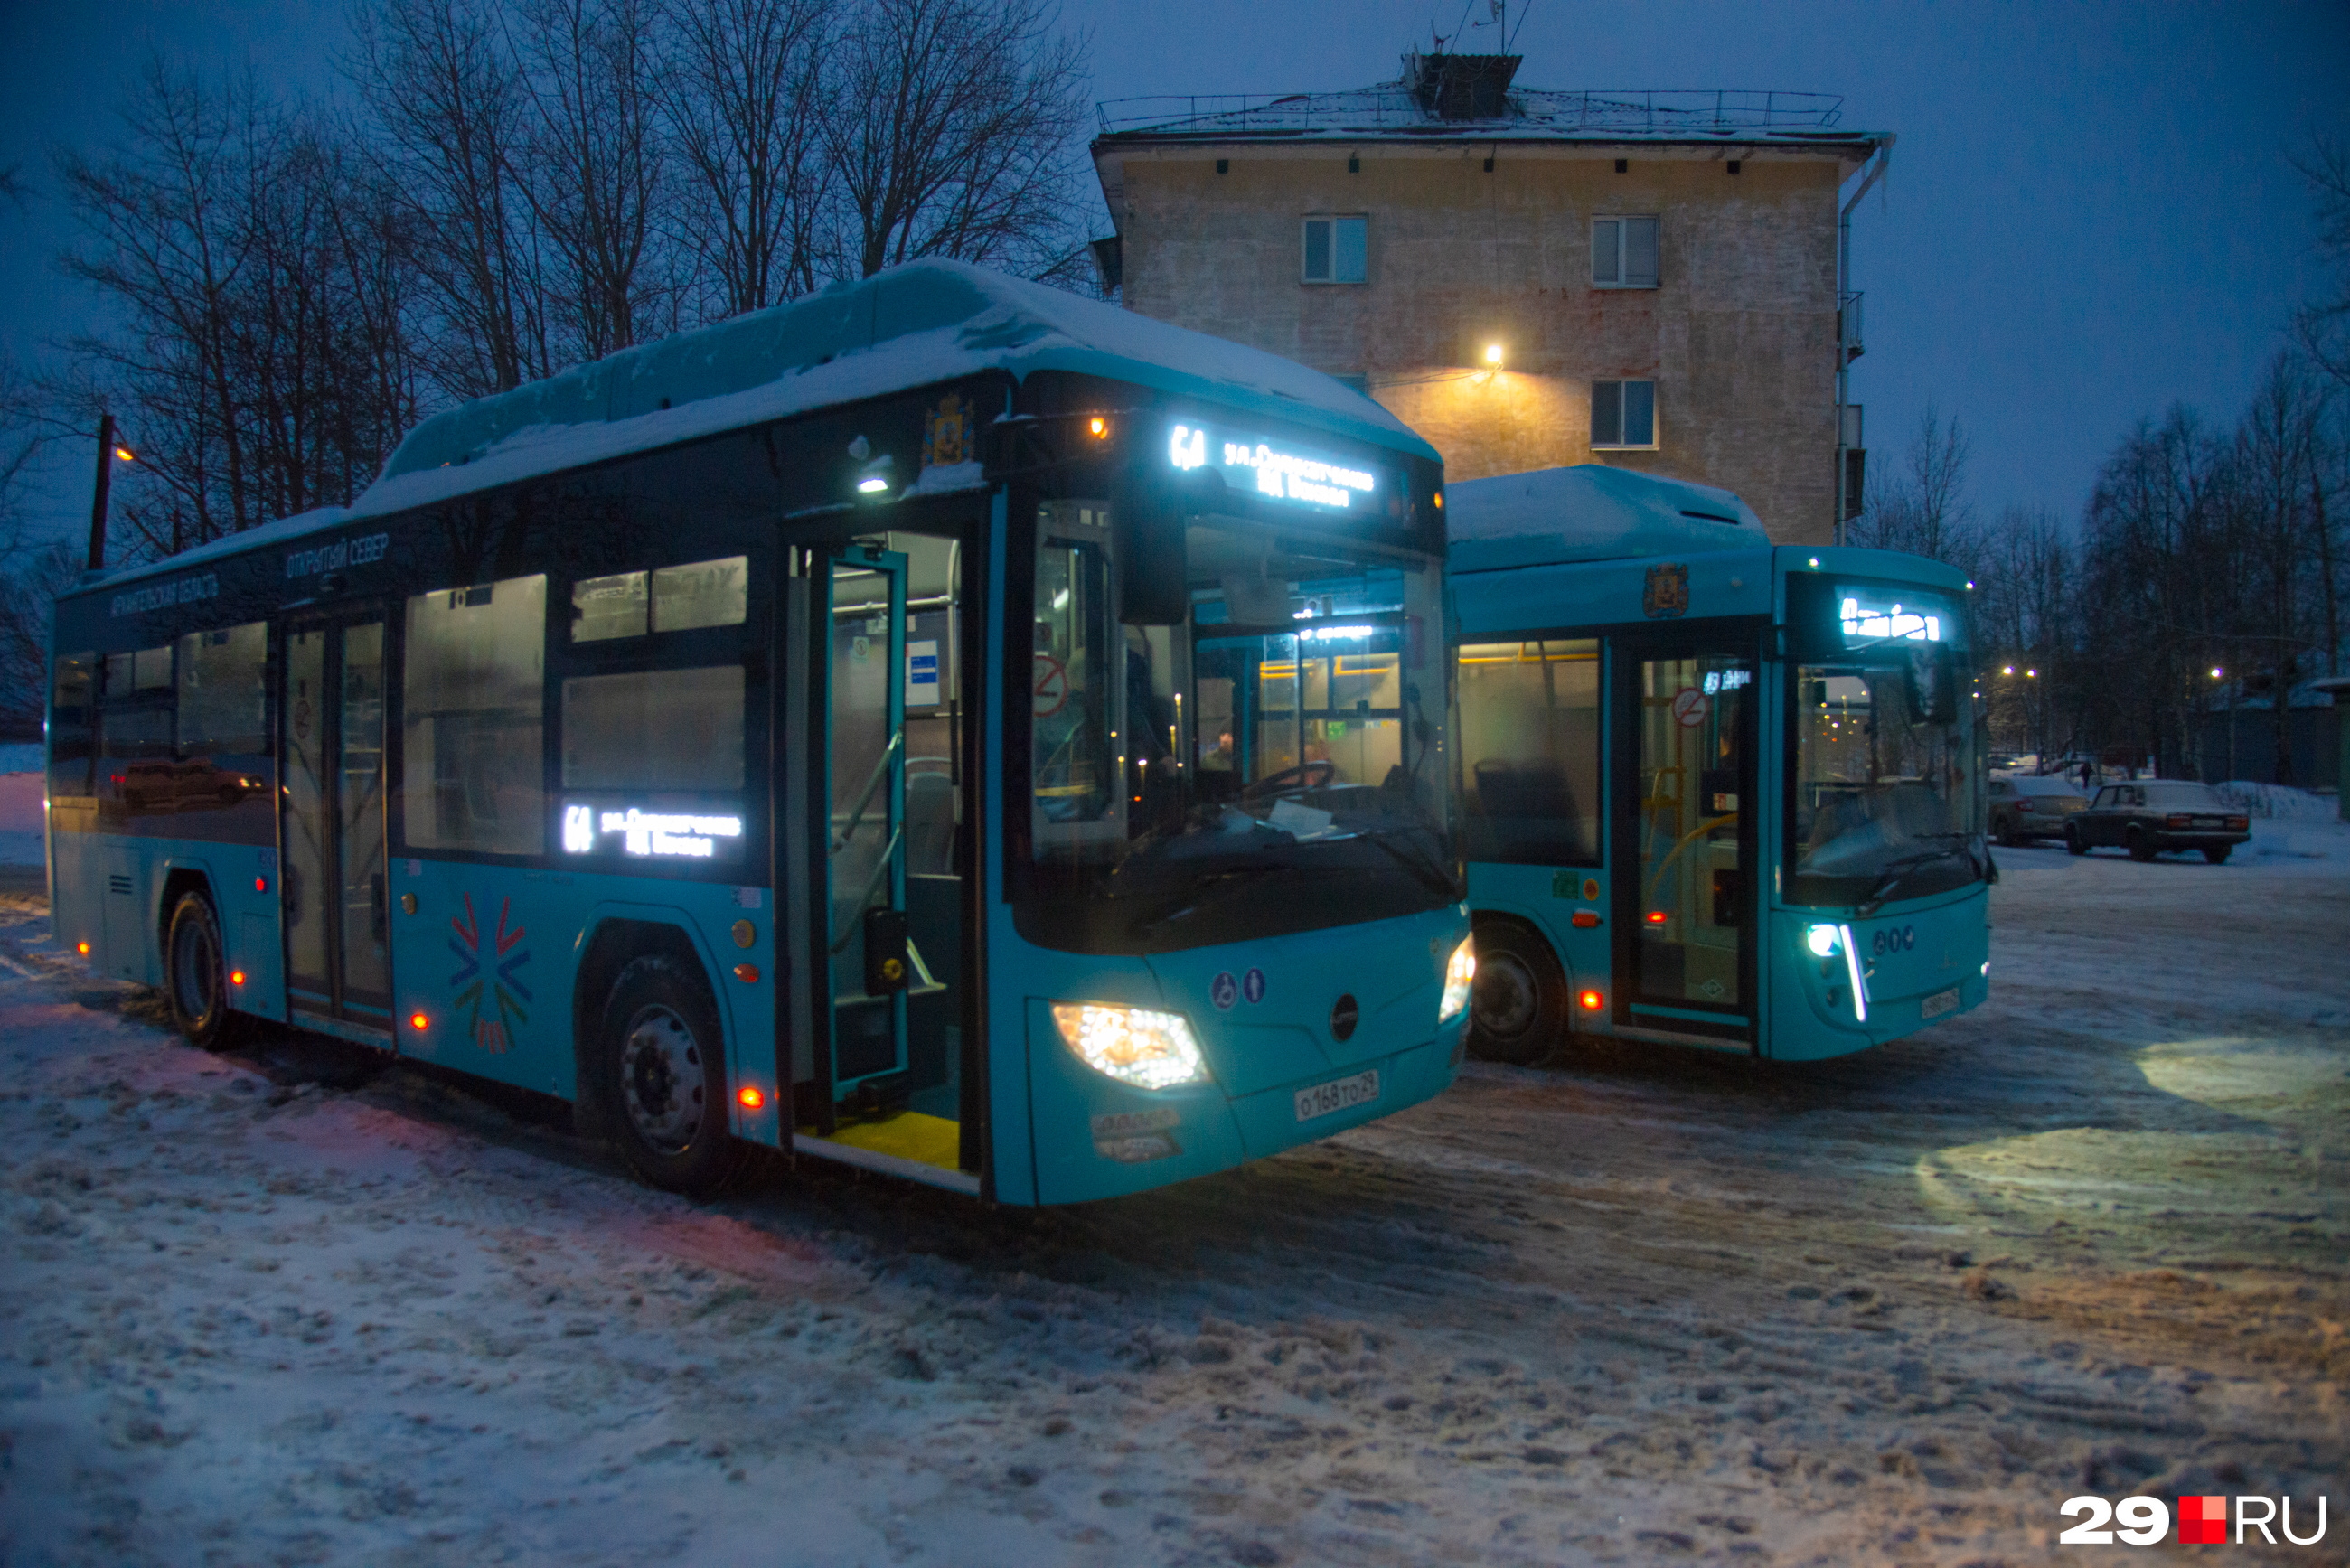 Вместительность этих автобусов, говорит Олег, не такая уж и большая